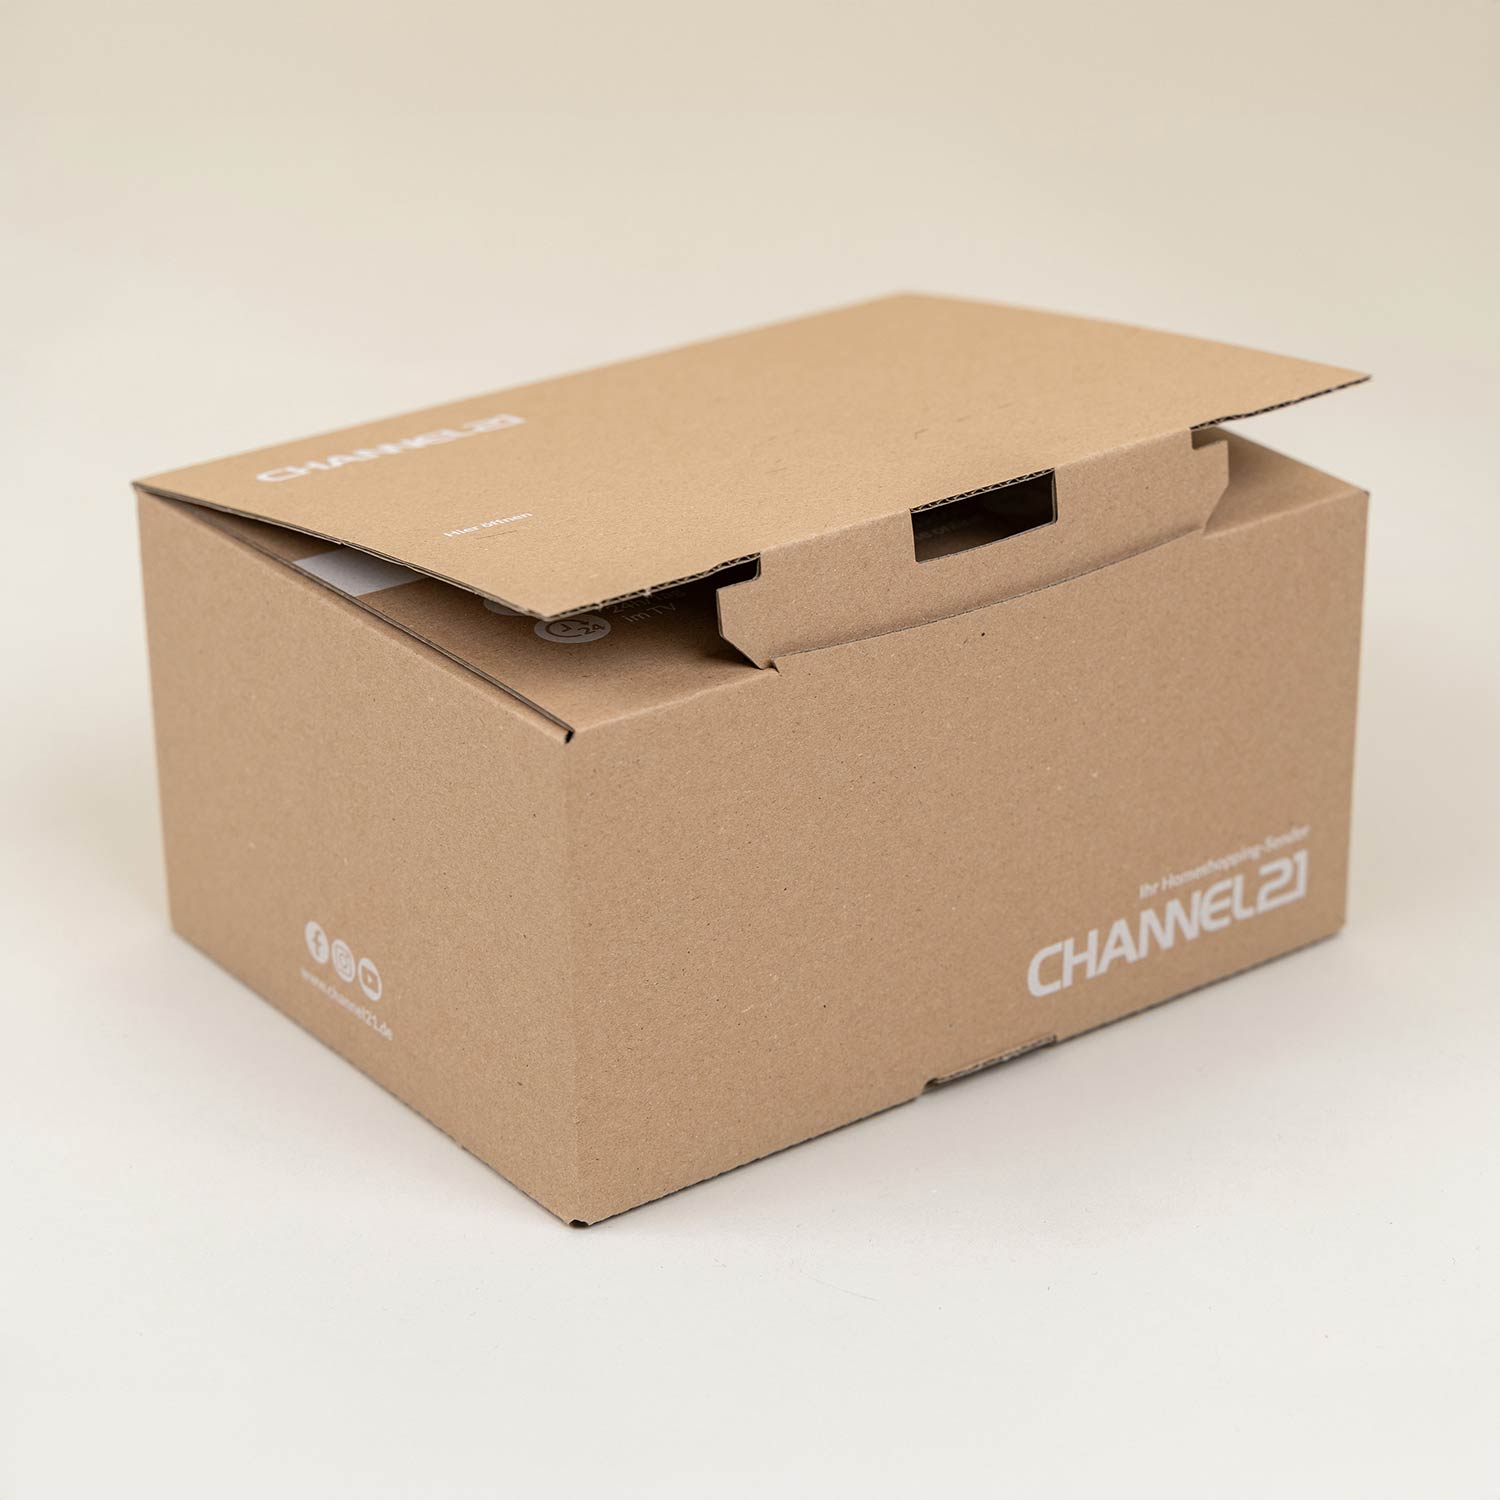 CHANNEL21-Verpackung mit Sicherheitsverschluss